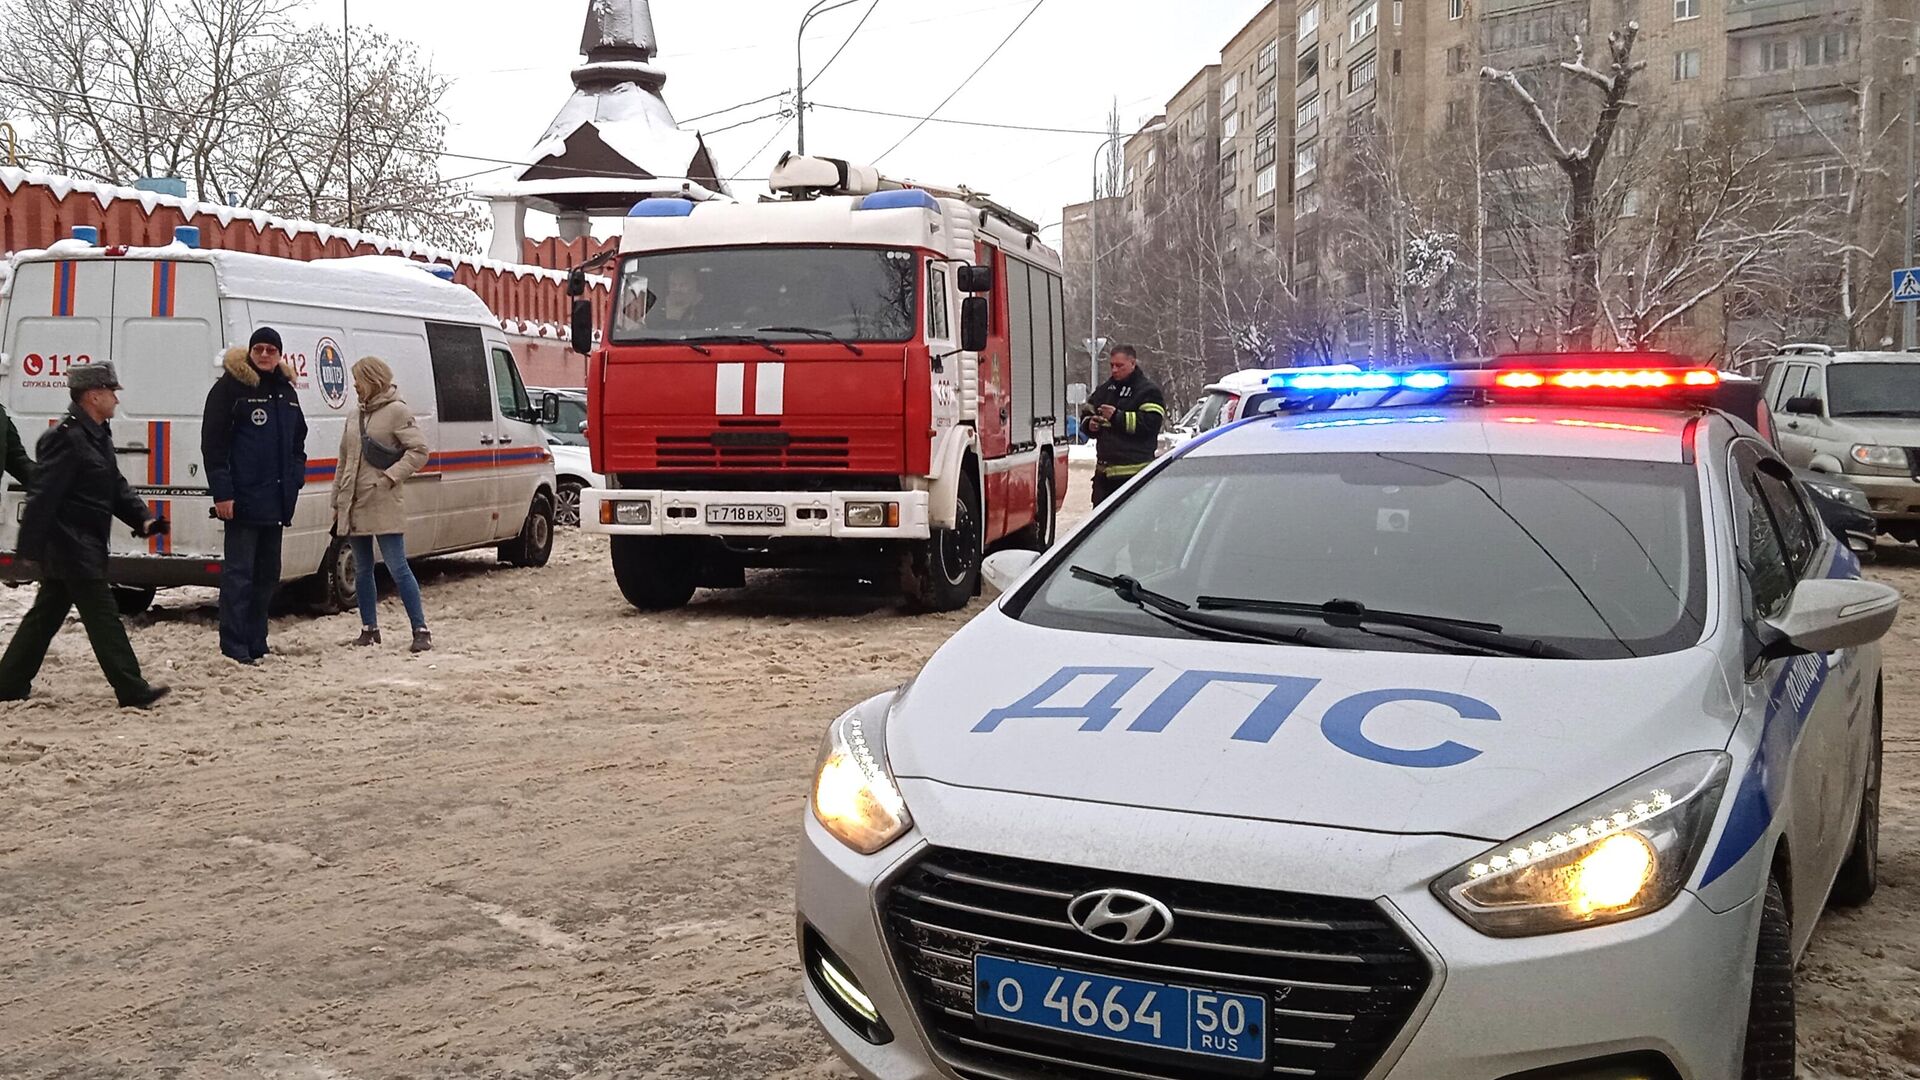 Напавший на гимназию в Серпухове находится в реанимации, сообщили в СК